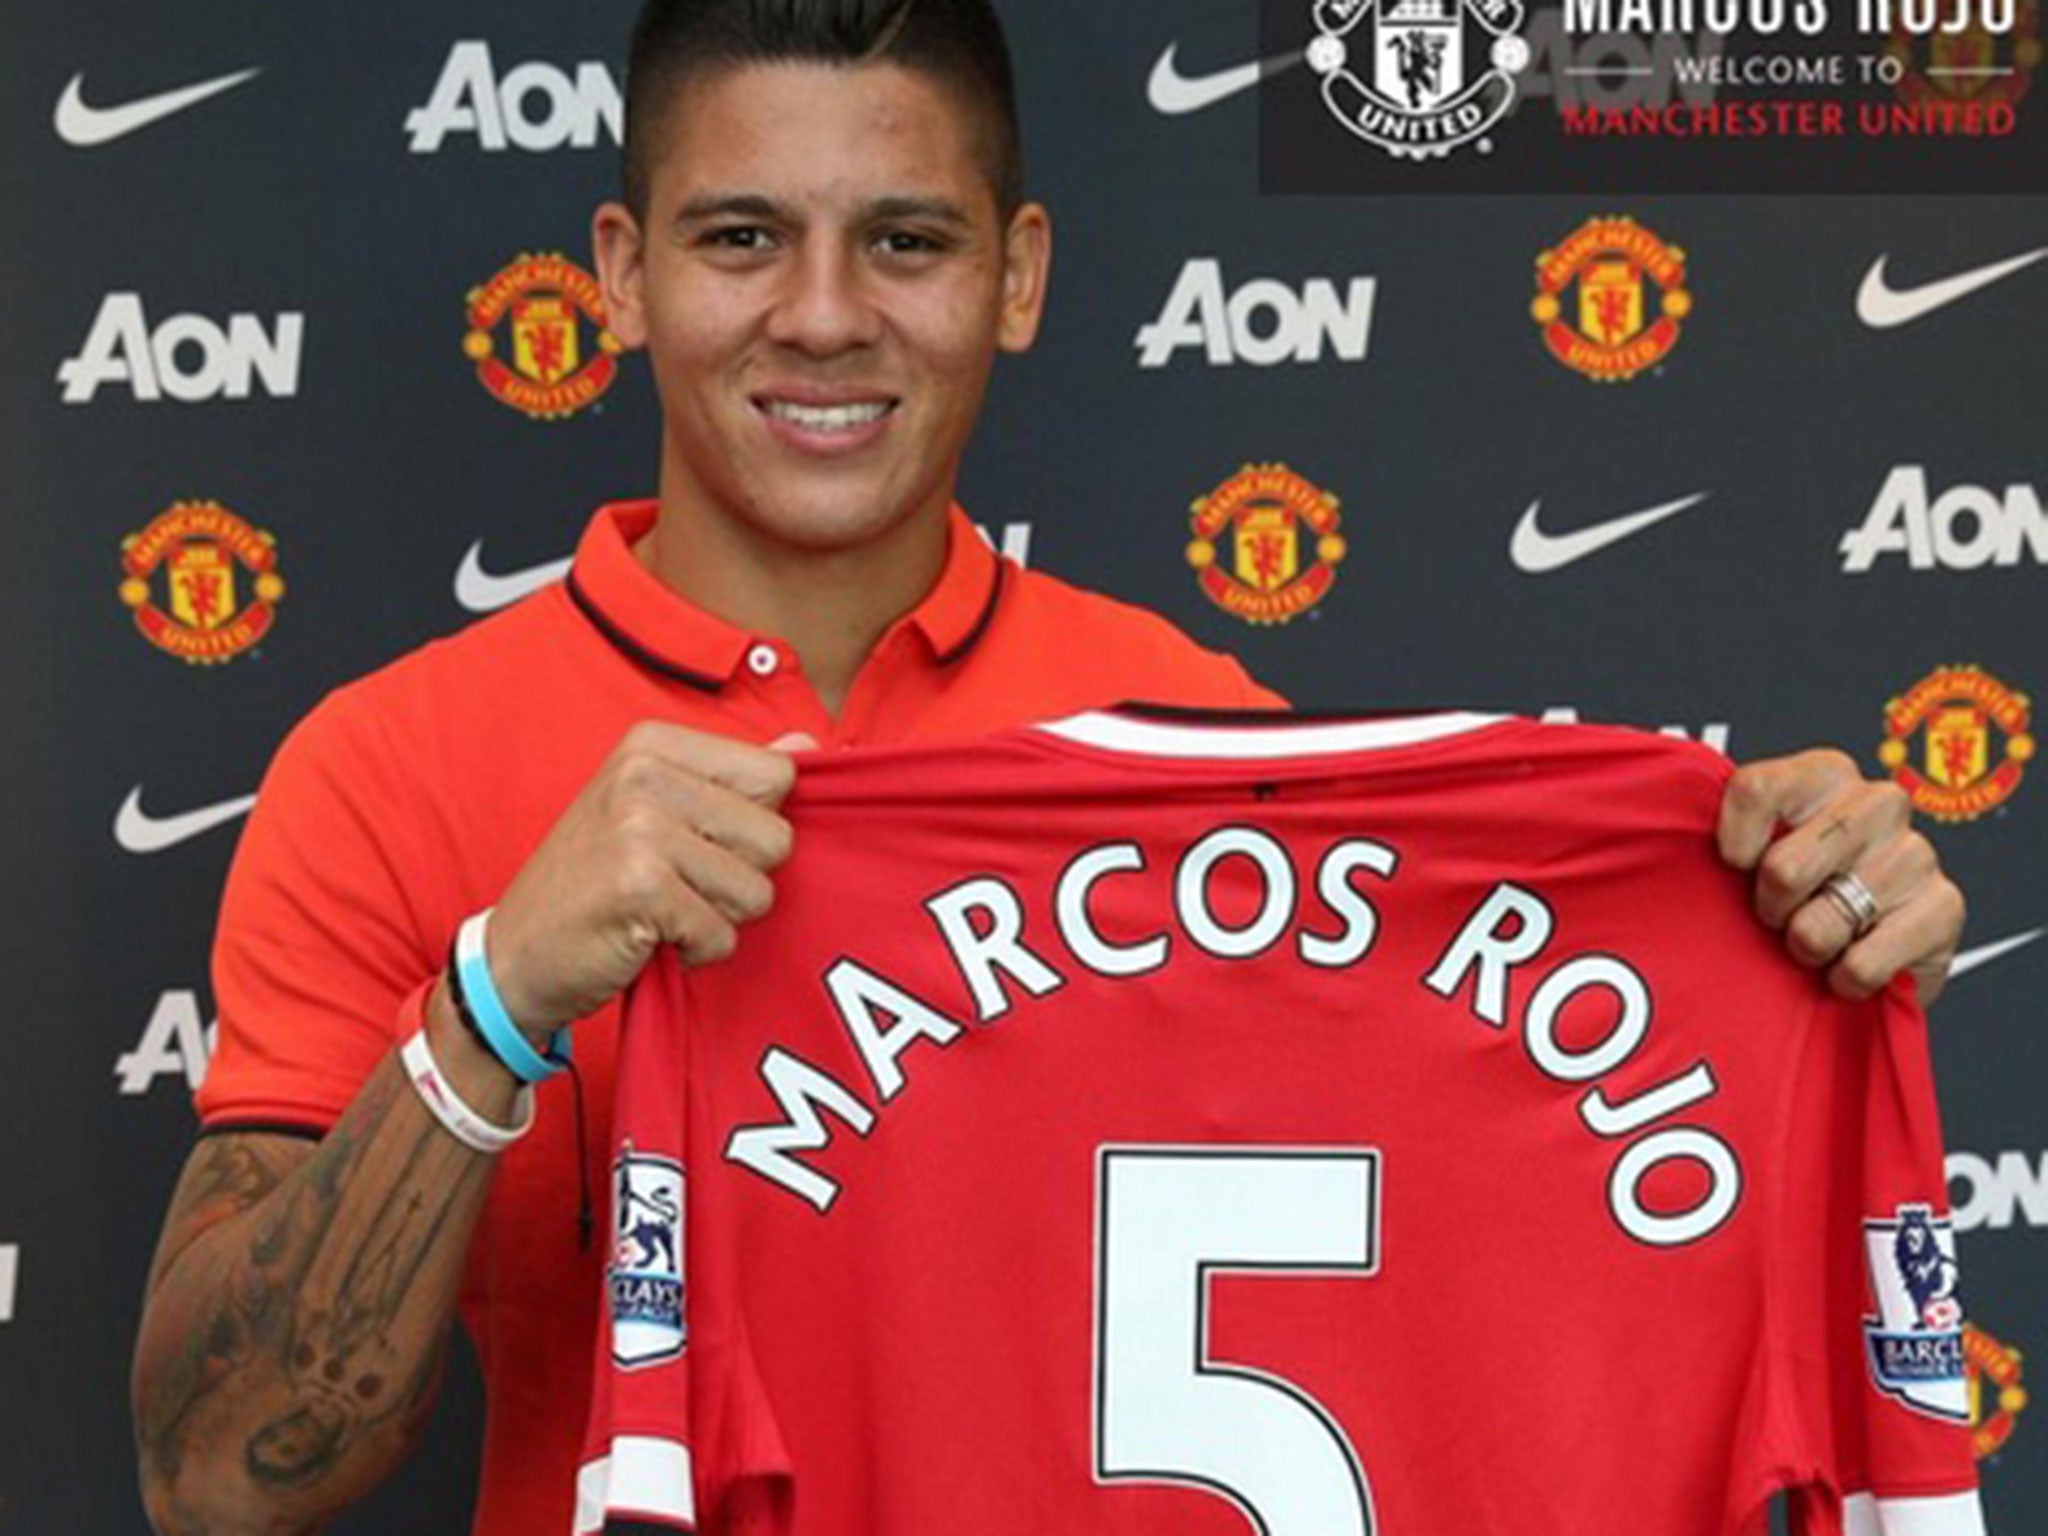 Marcos Rojo and his No 5 shirt